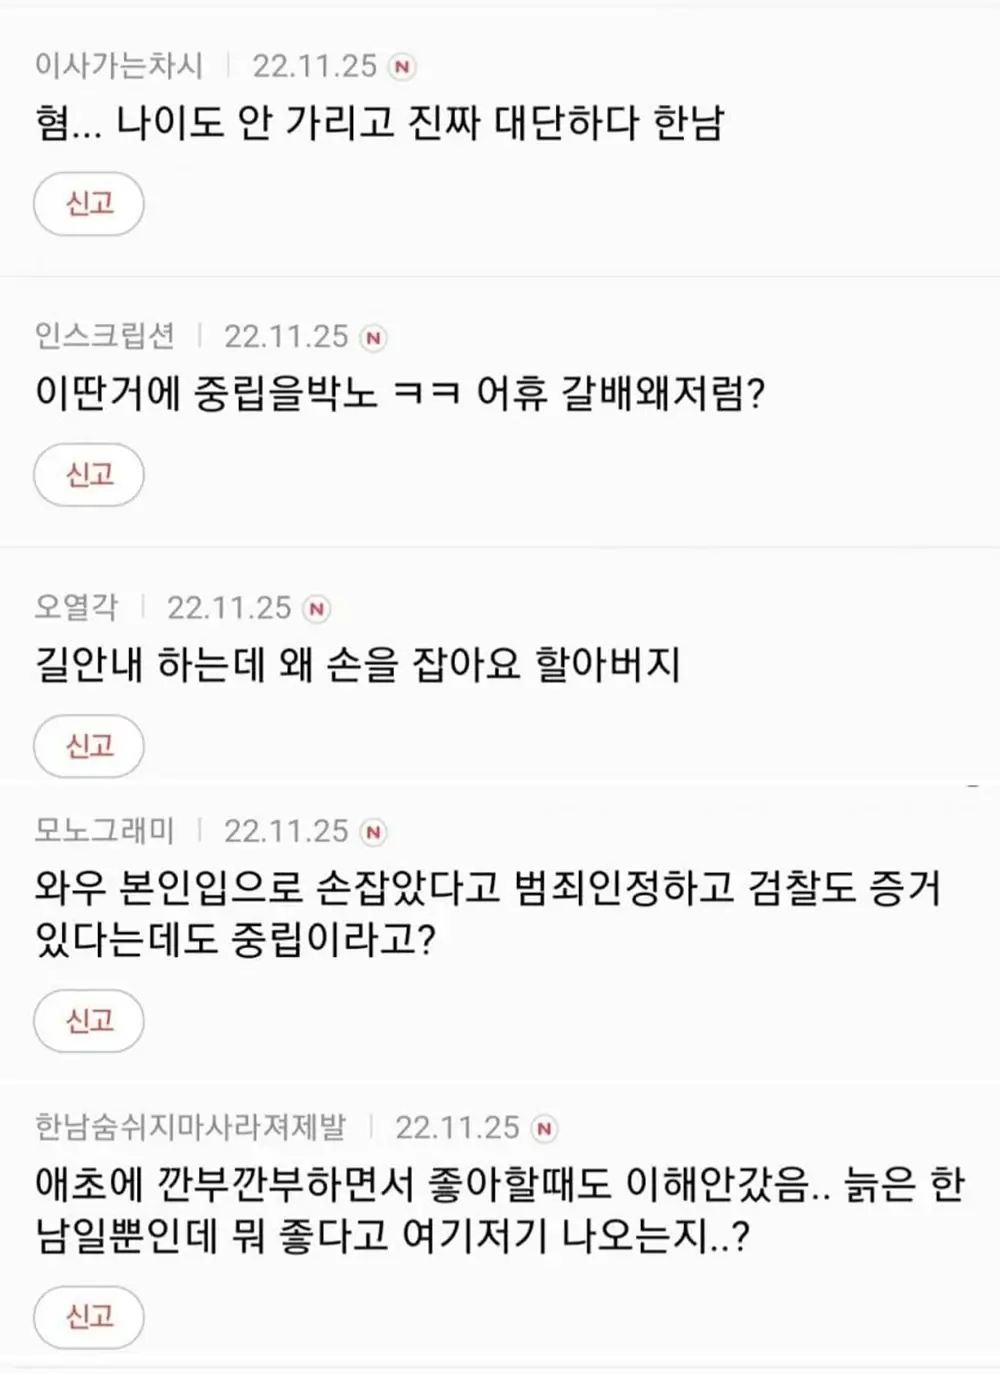 오영수 강제추행 혐의 언냐들 반응 5